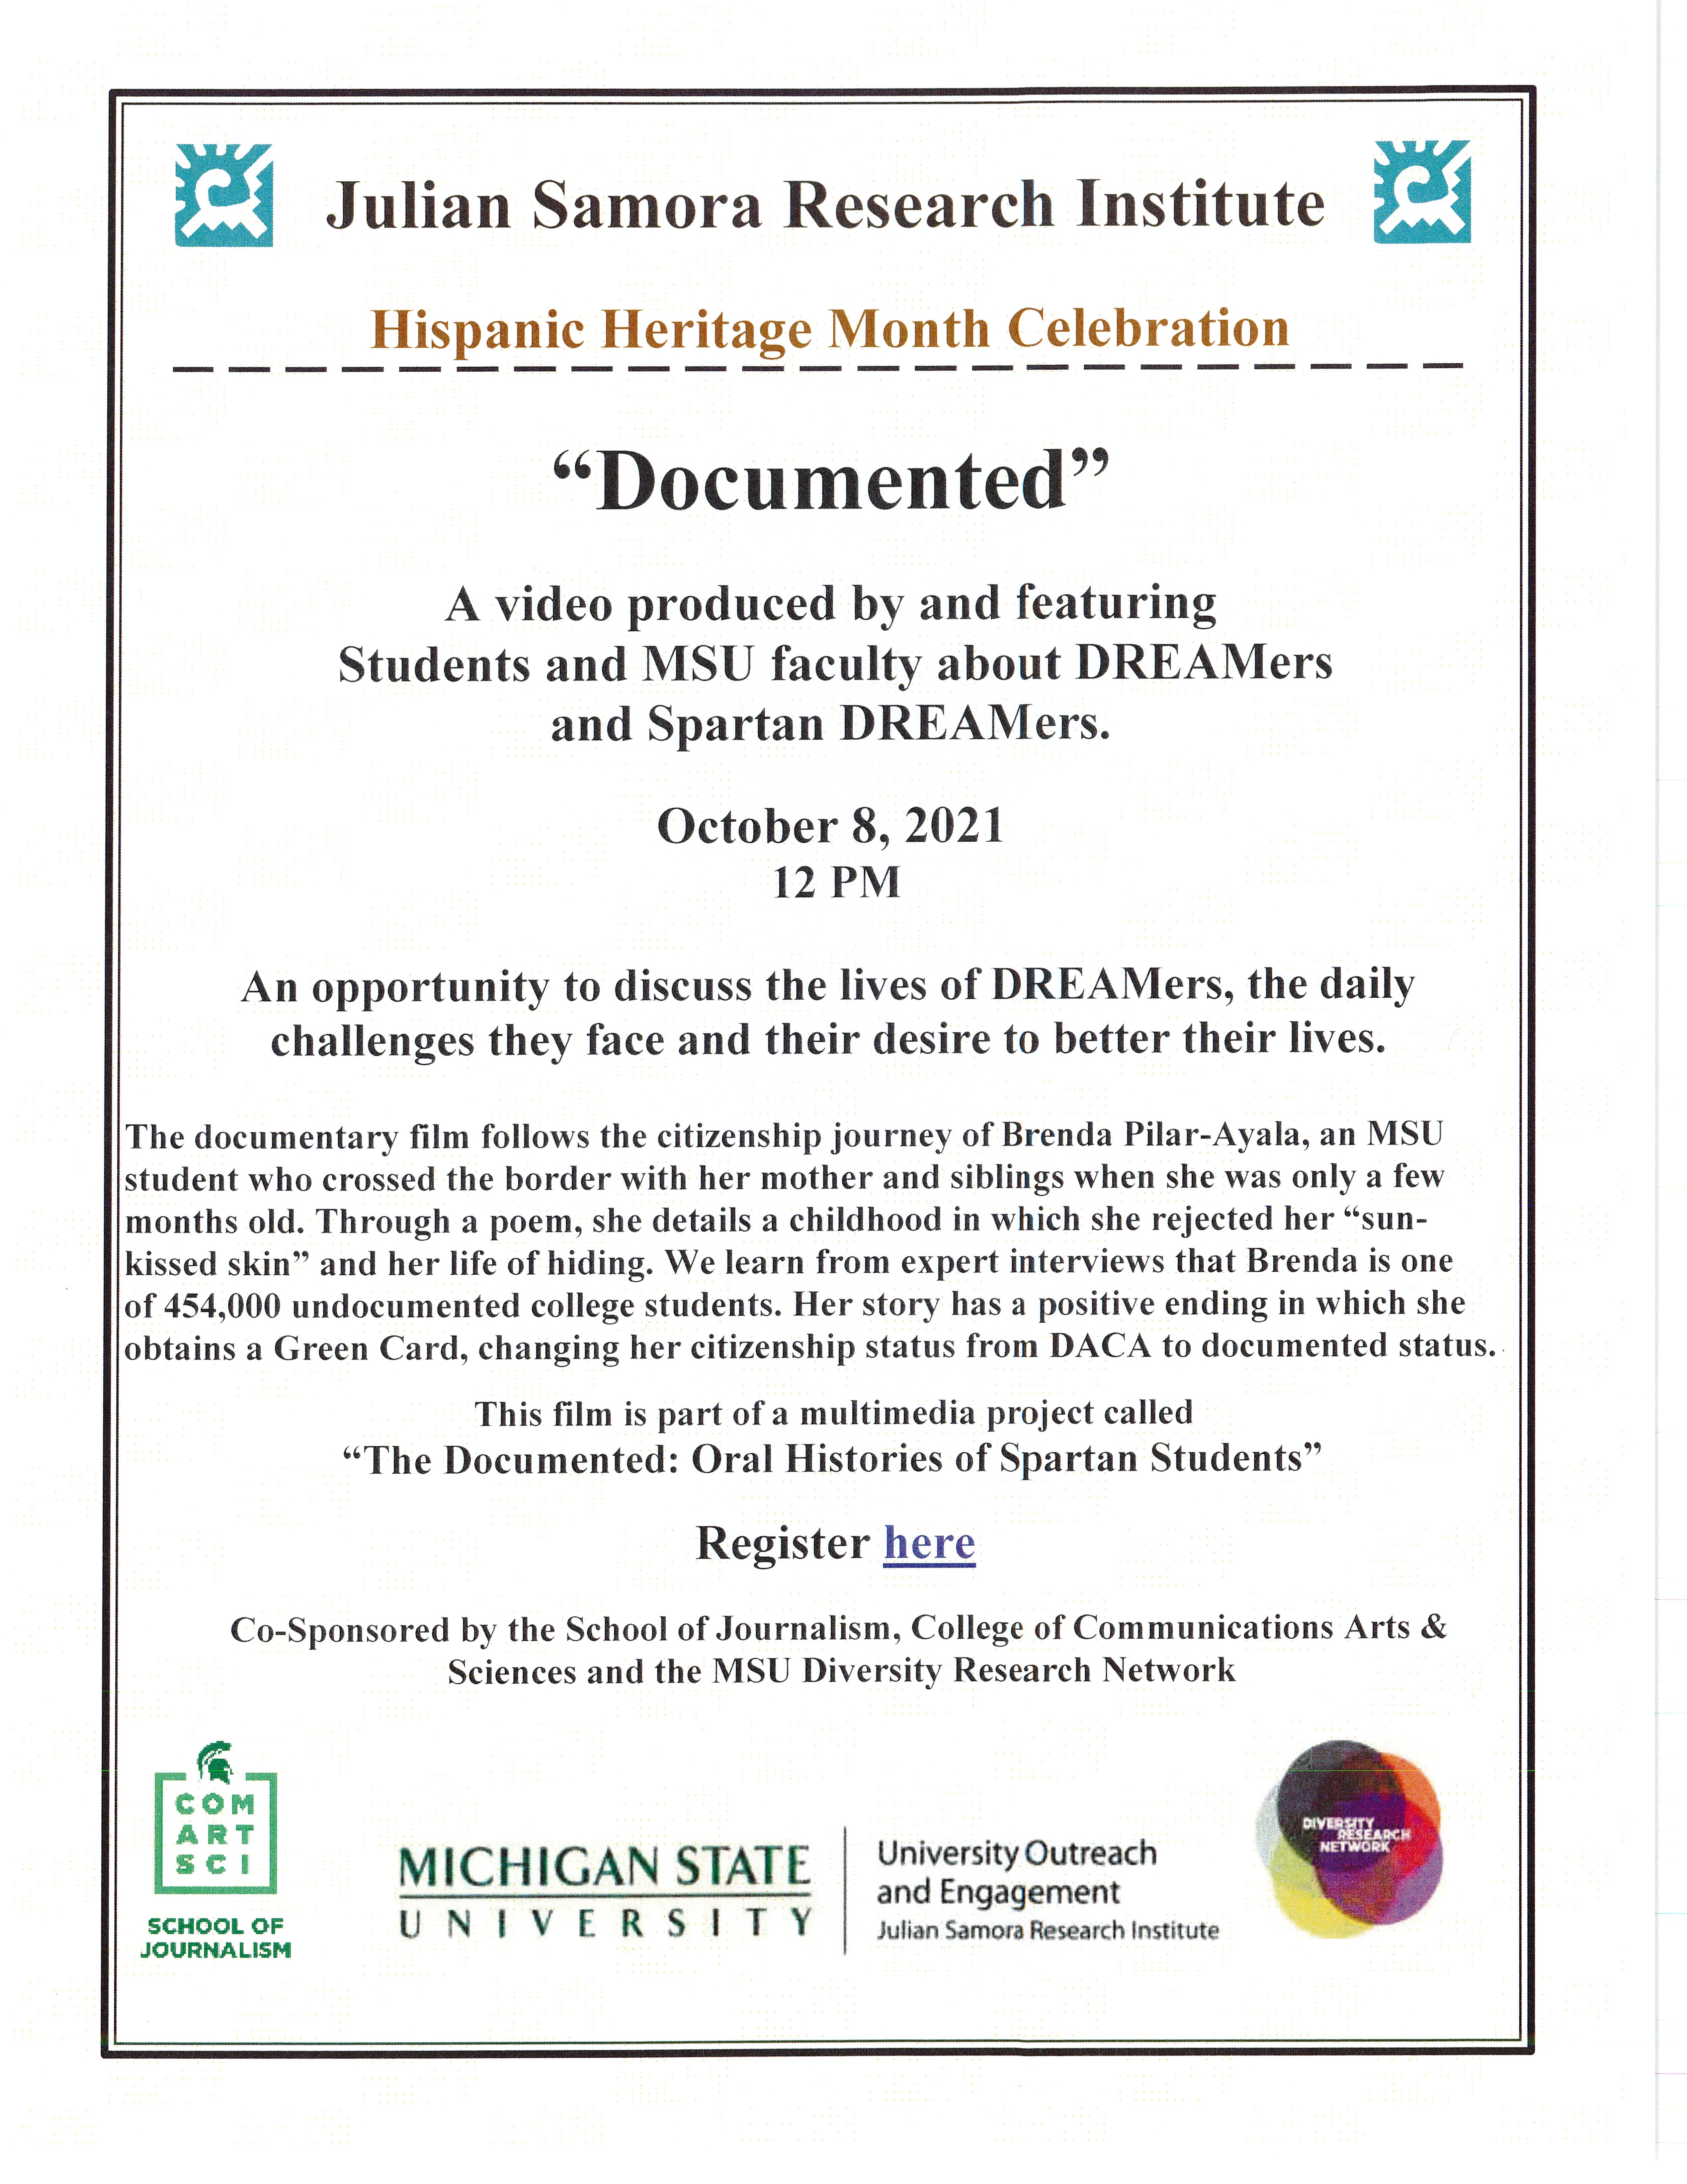 Hispanic Heritage Month Celebration: "Documented"